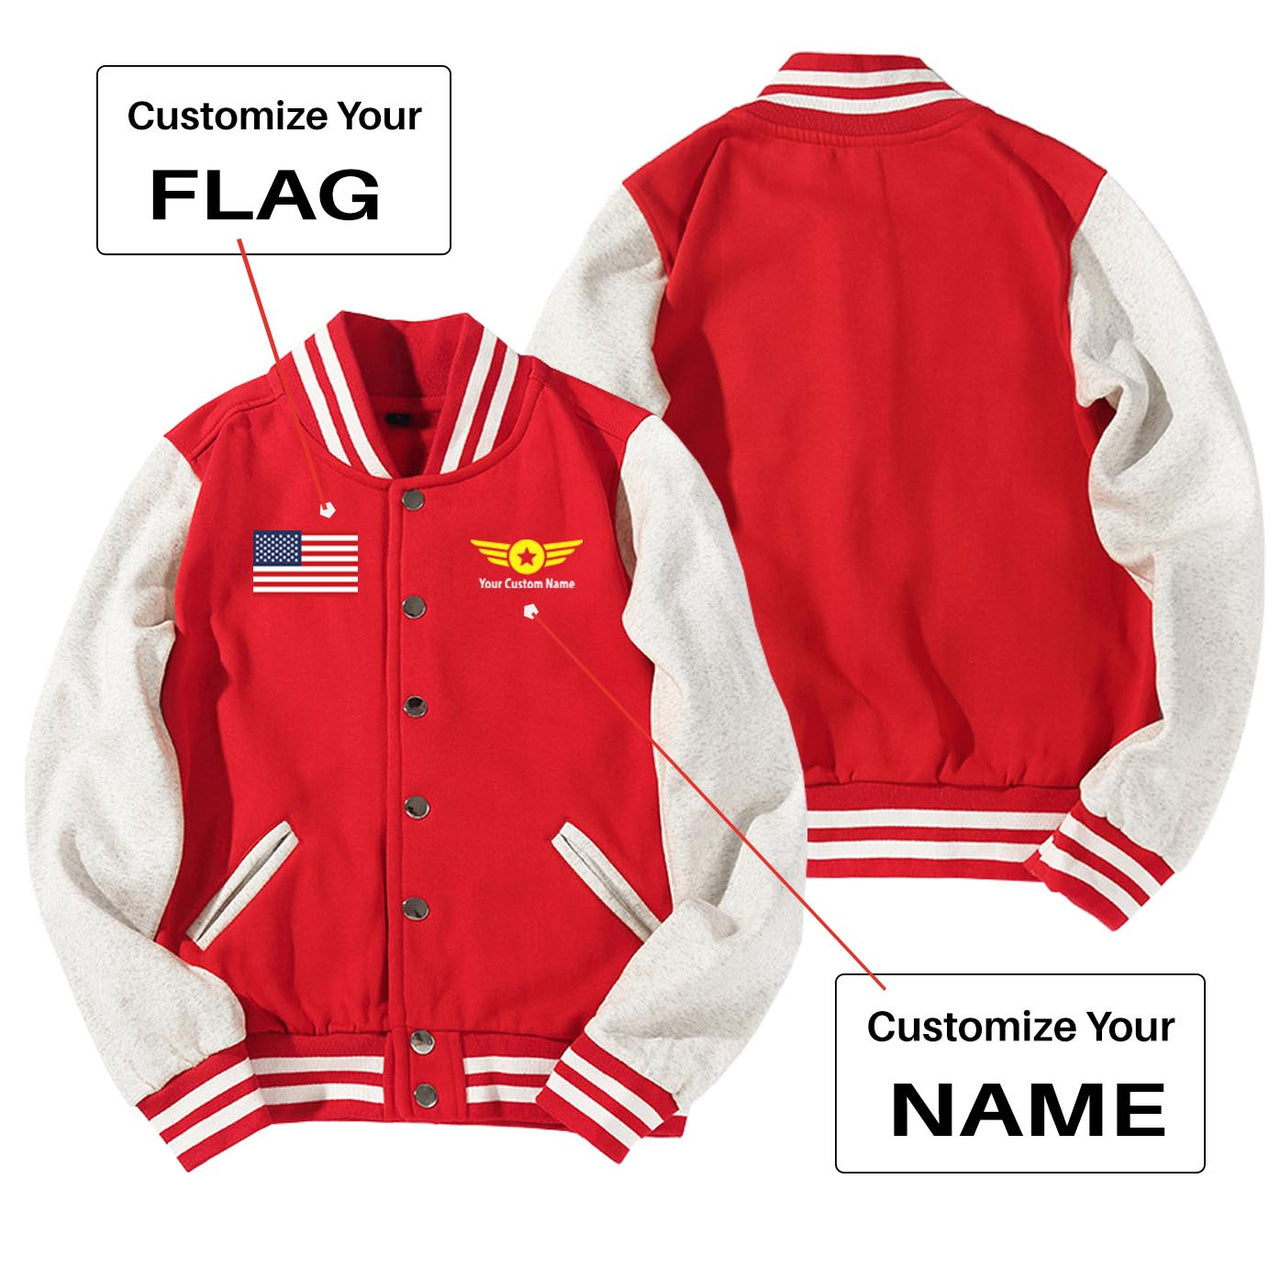 Custom Flag & Name with "Badge 4" Designed Baseball Style Jackets